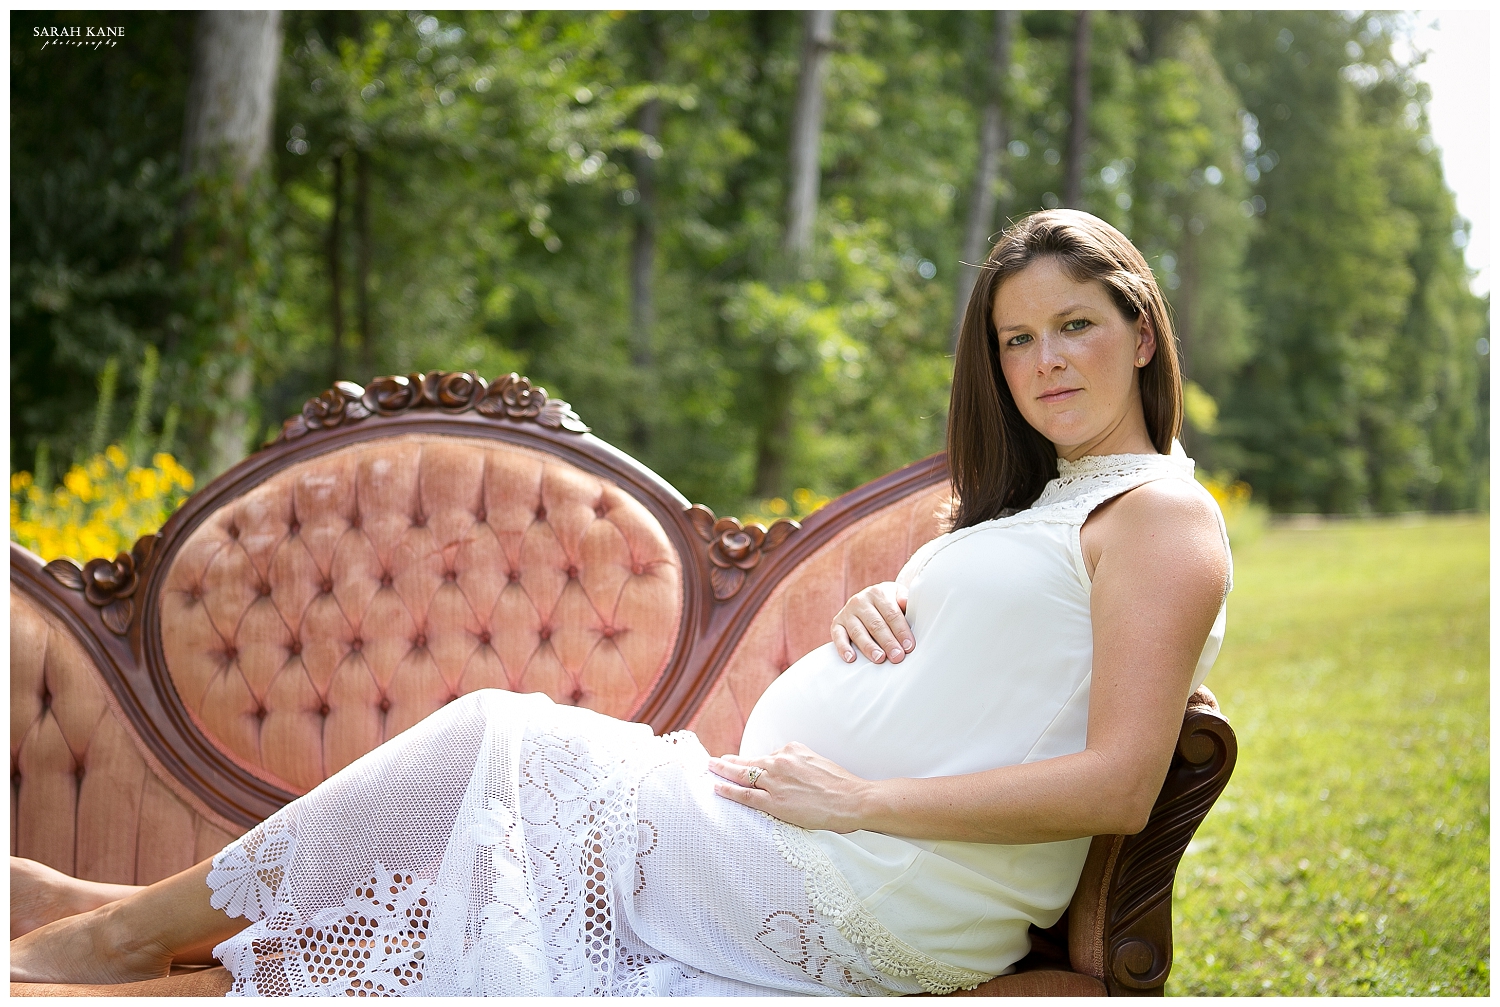 Kristin Maternity - Sarah Kane Photography081.JPG